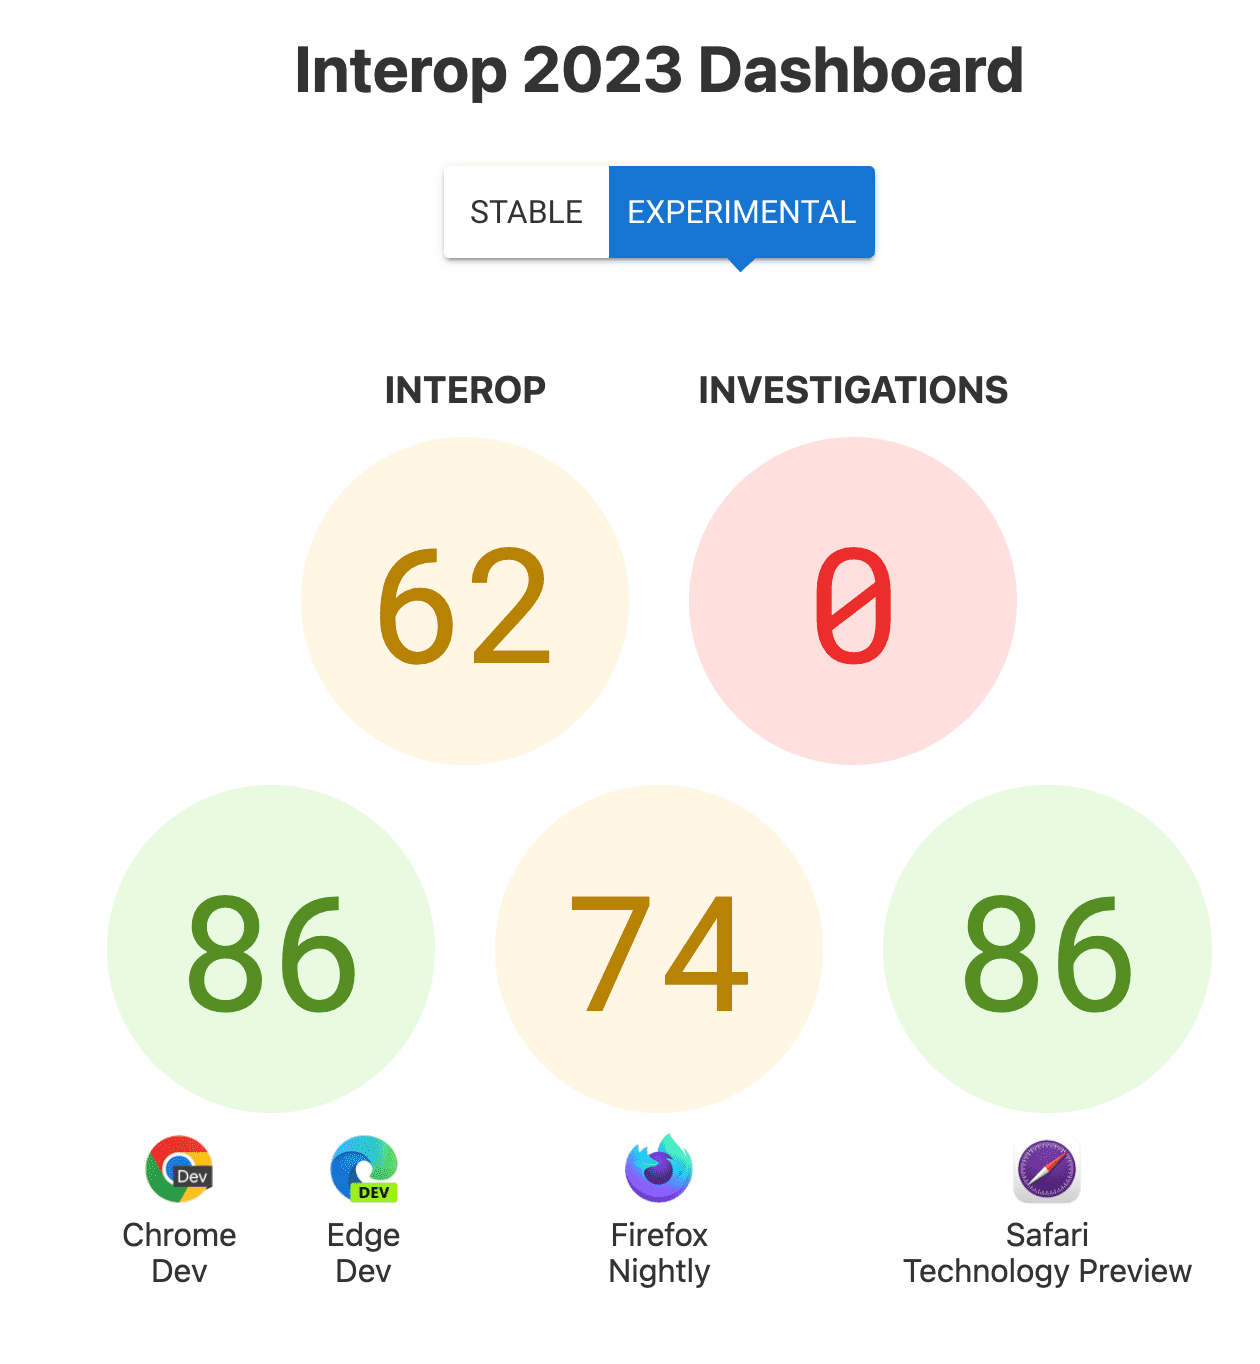 互通性的整體分數：62 分，調查：0，每個瀏覽器的分數：86 分 (Chrome 和 Edge)、74 分 (Firefox) 及 86 分 (Safari 技術預覽)。